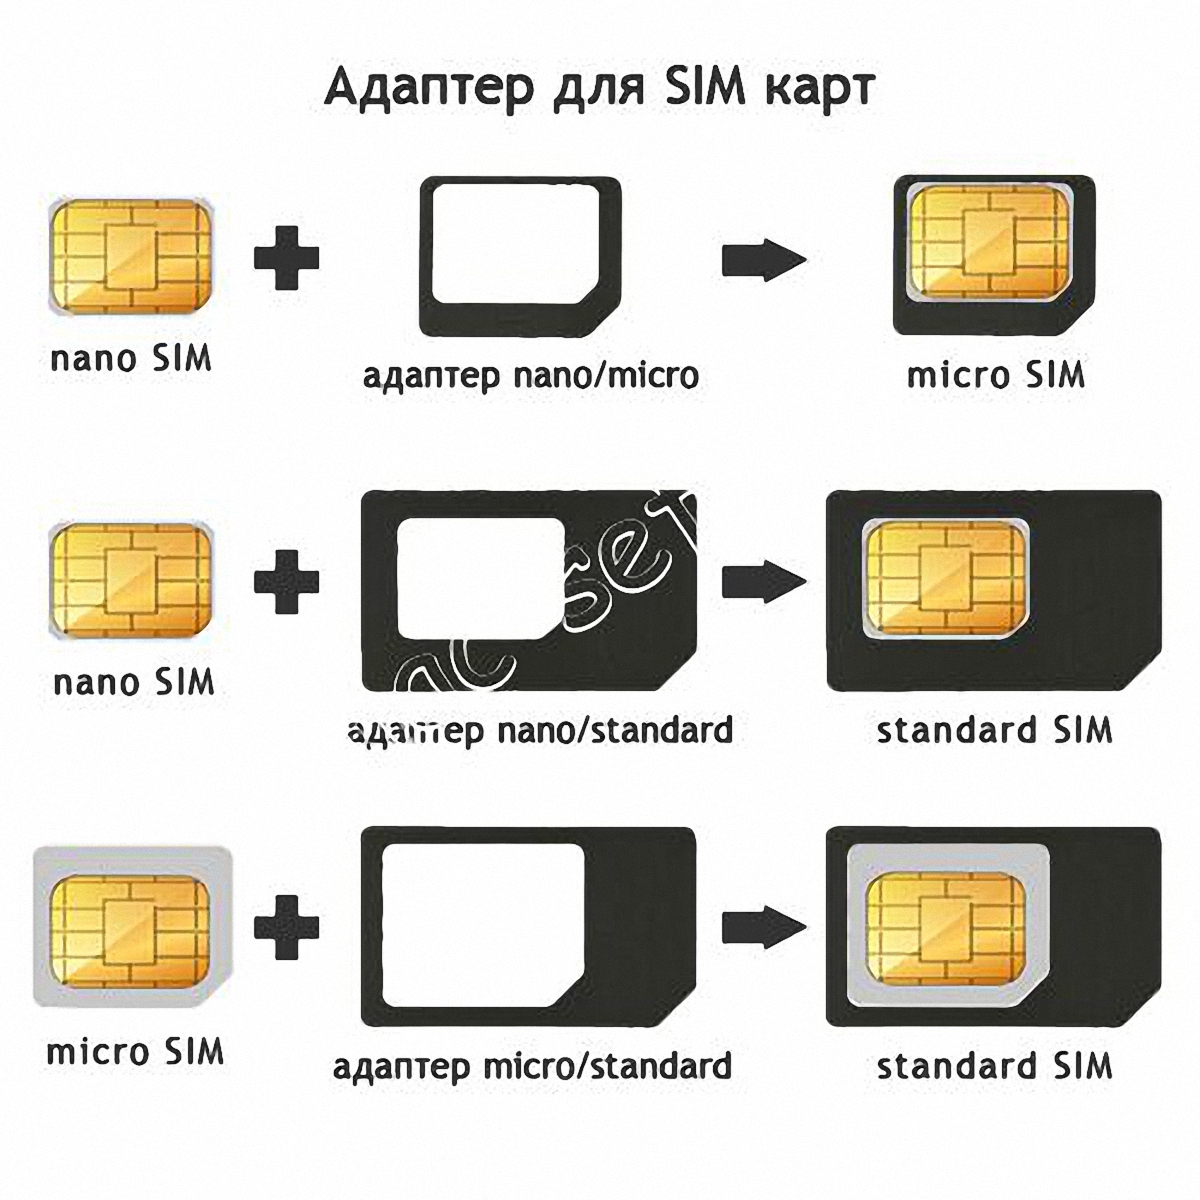 Переходники для sim карт (microSIM)